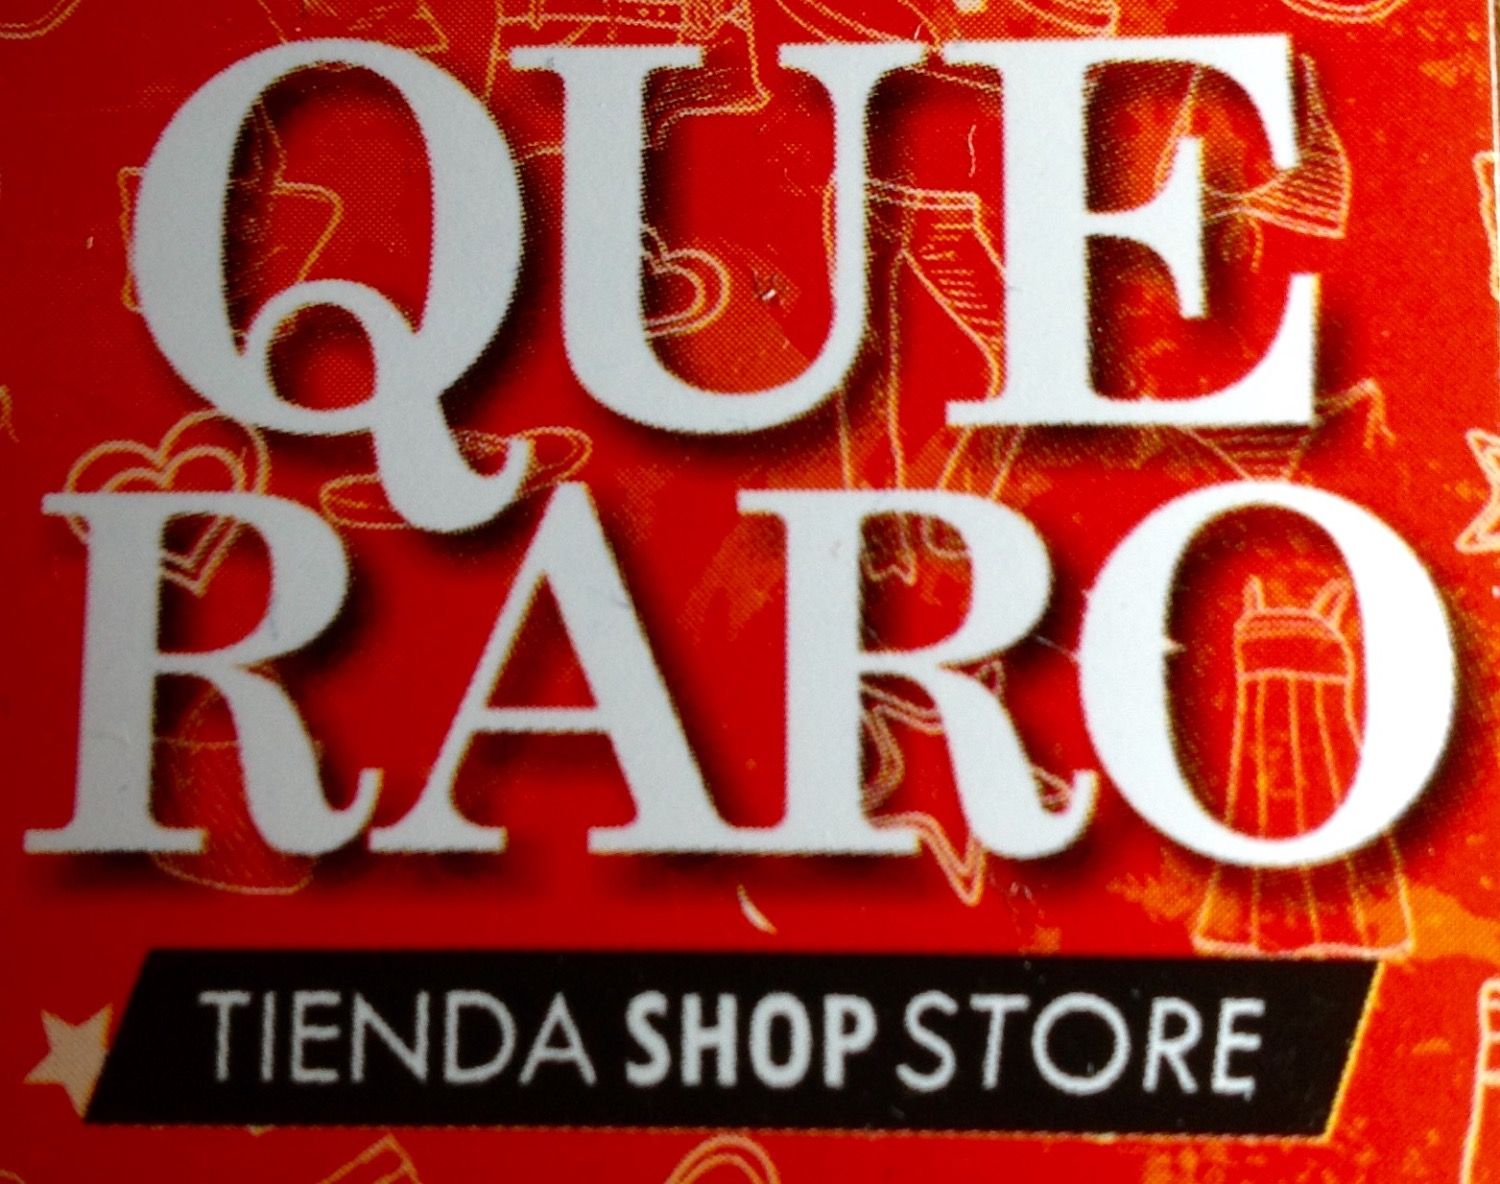 Logotipo Qué Raro – Tienda Shop Store